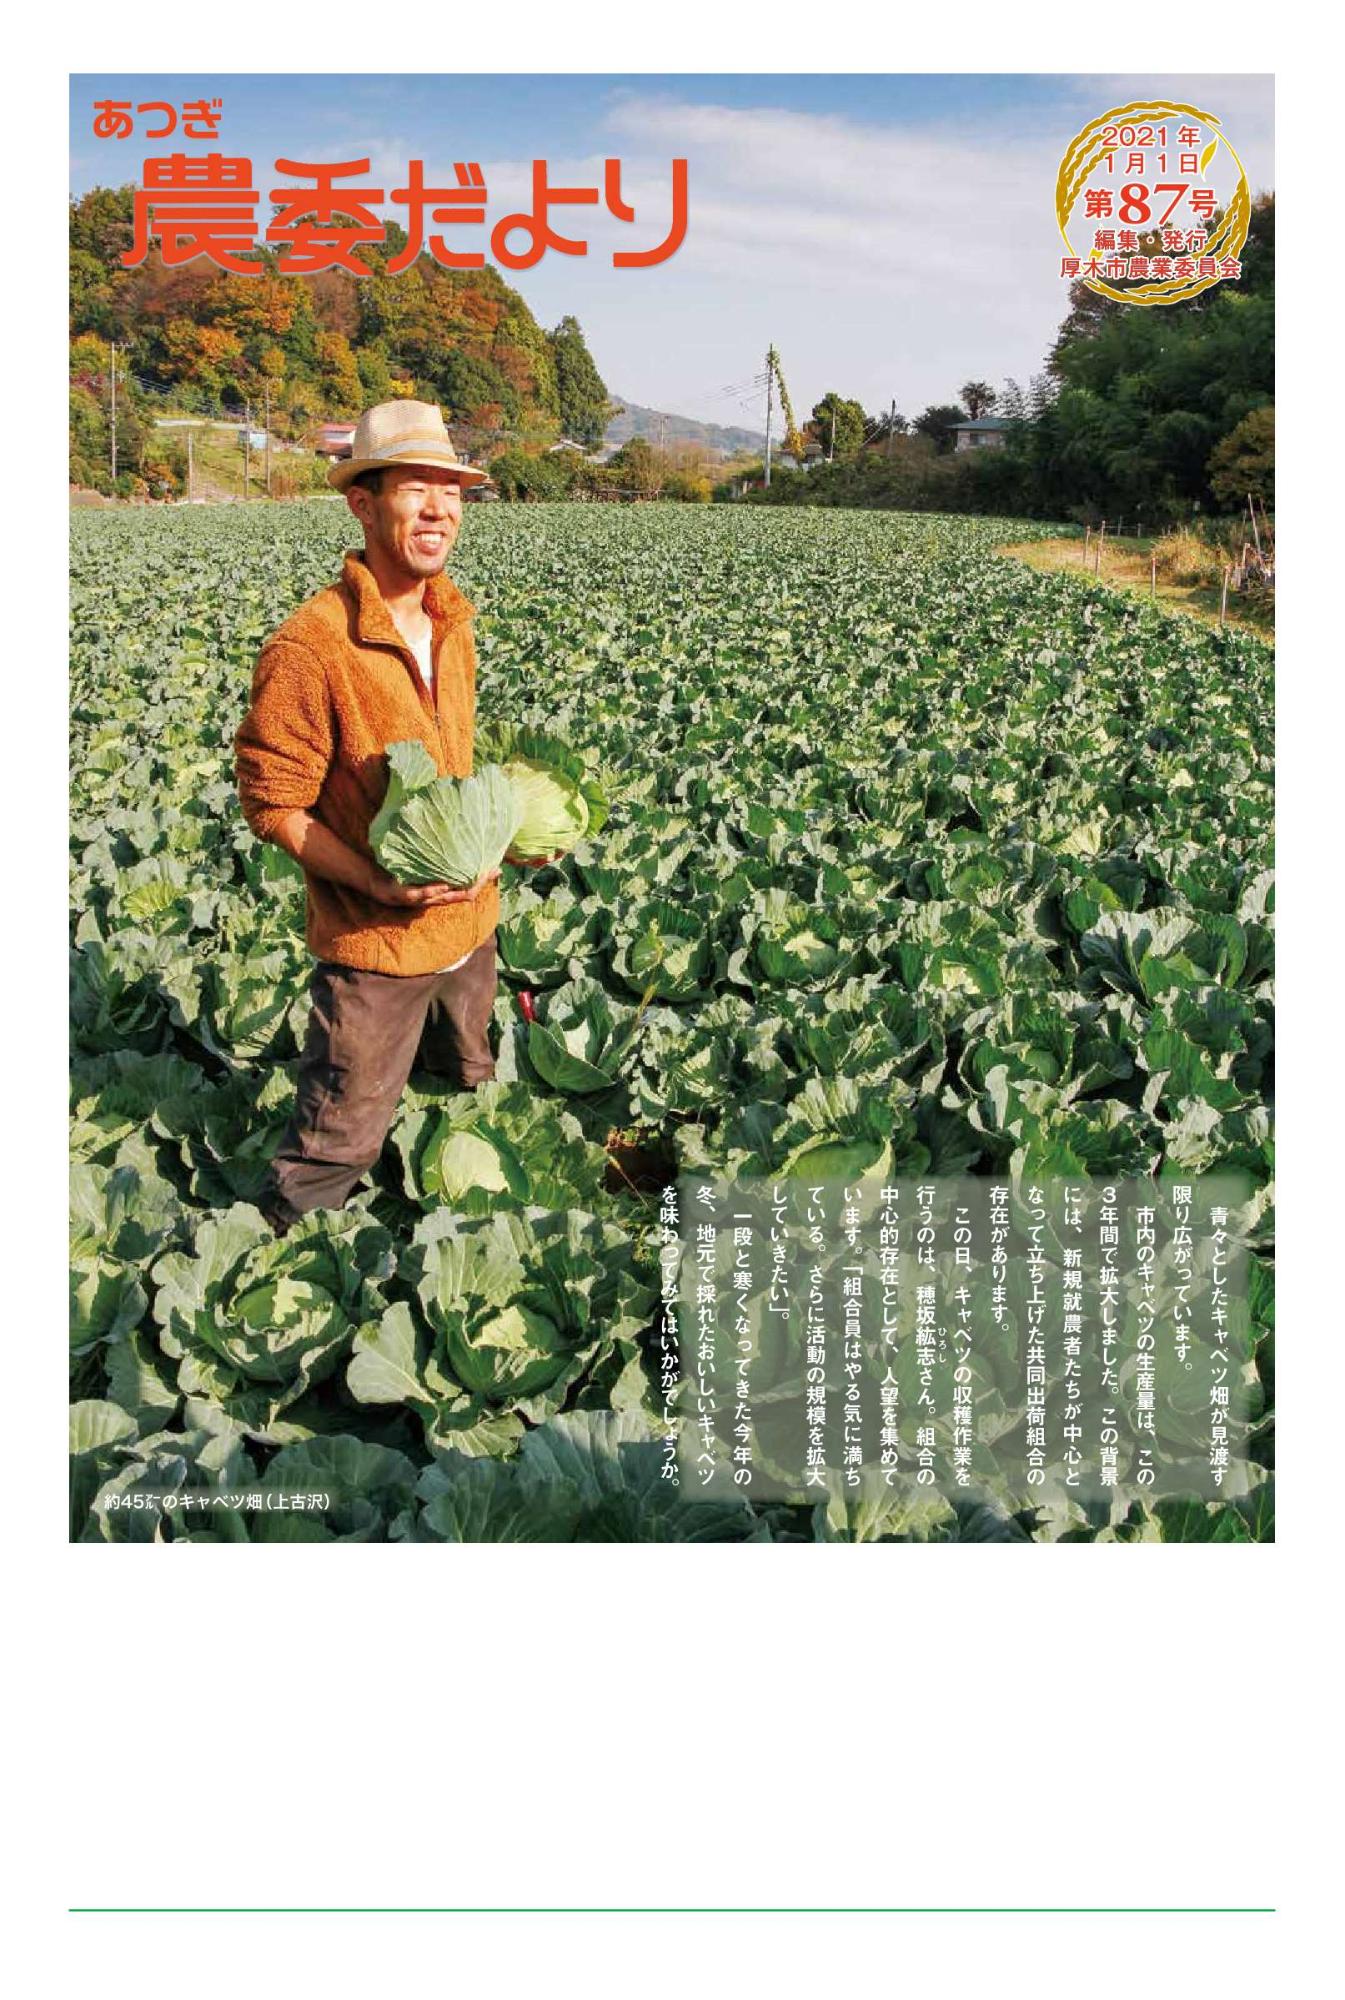 新規就農者が広大なキャベツ畑でキャベツを持ち笑顔を浮かべる写真を掲載した農委だより第87号の1面